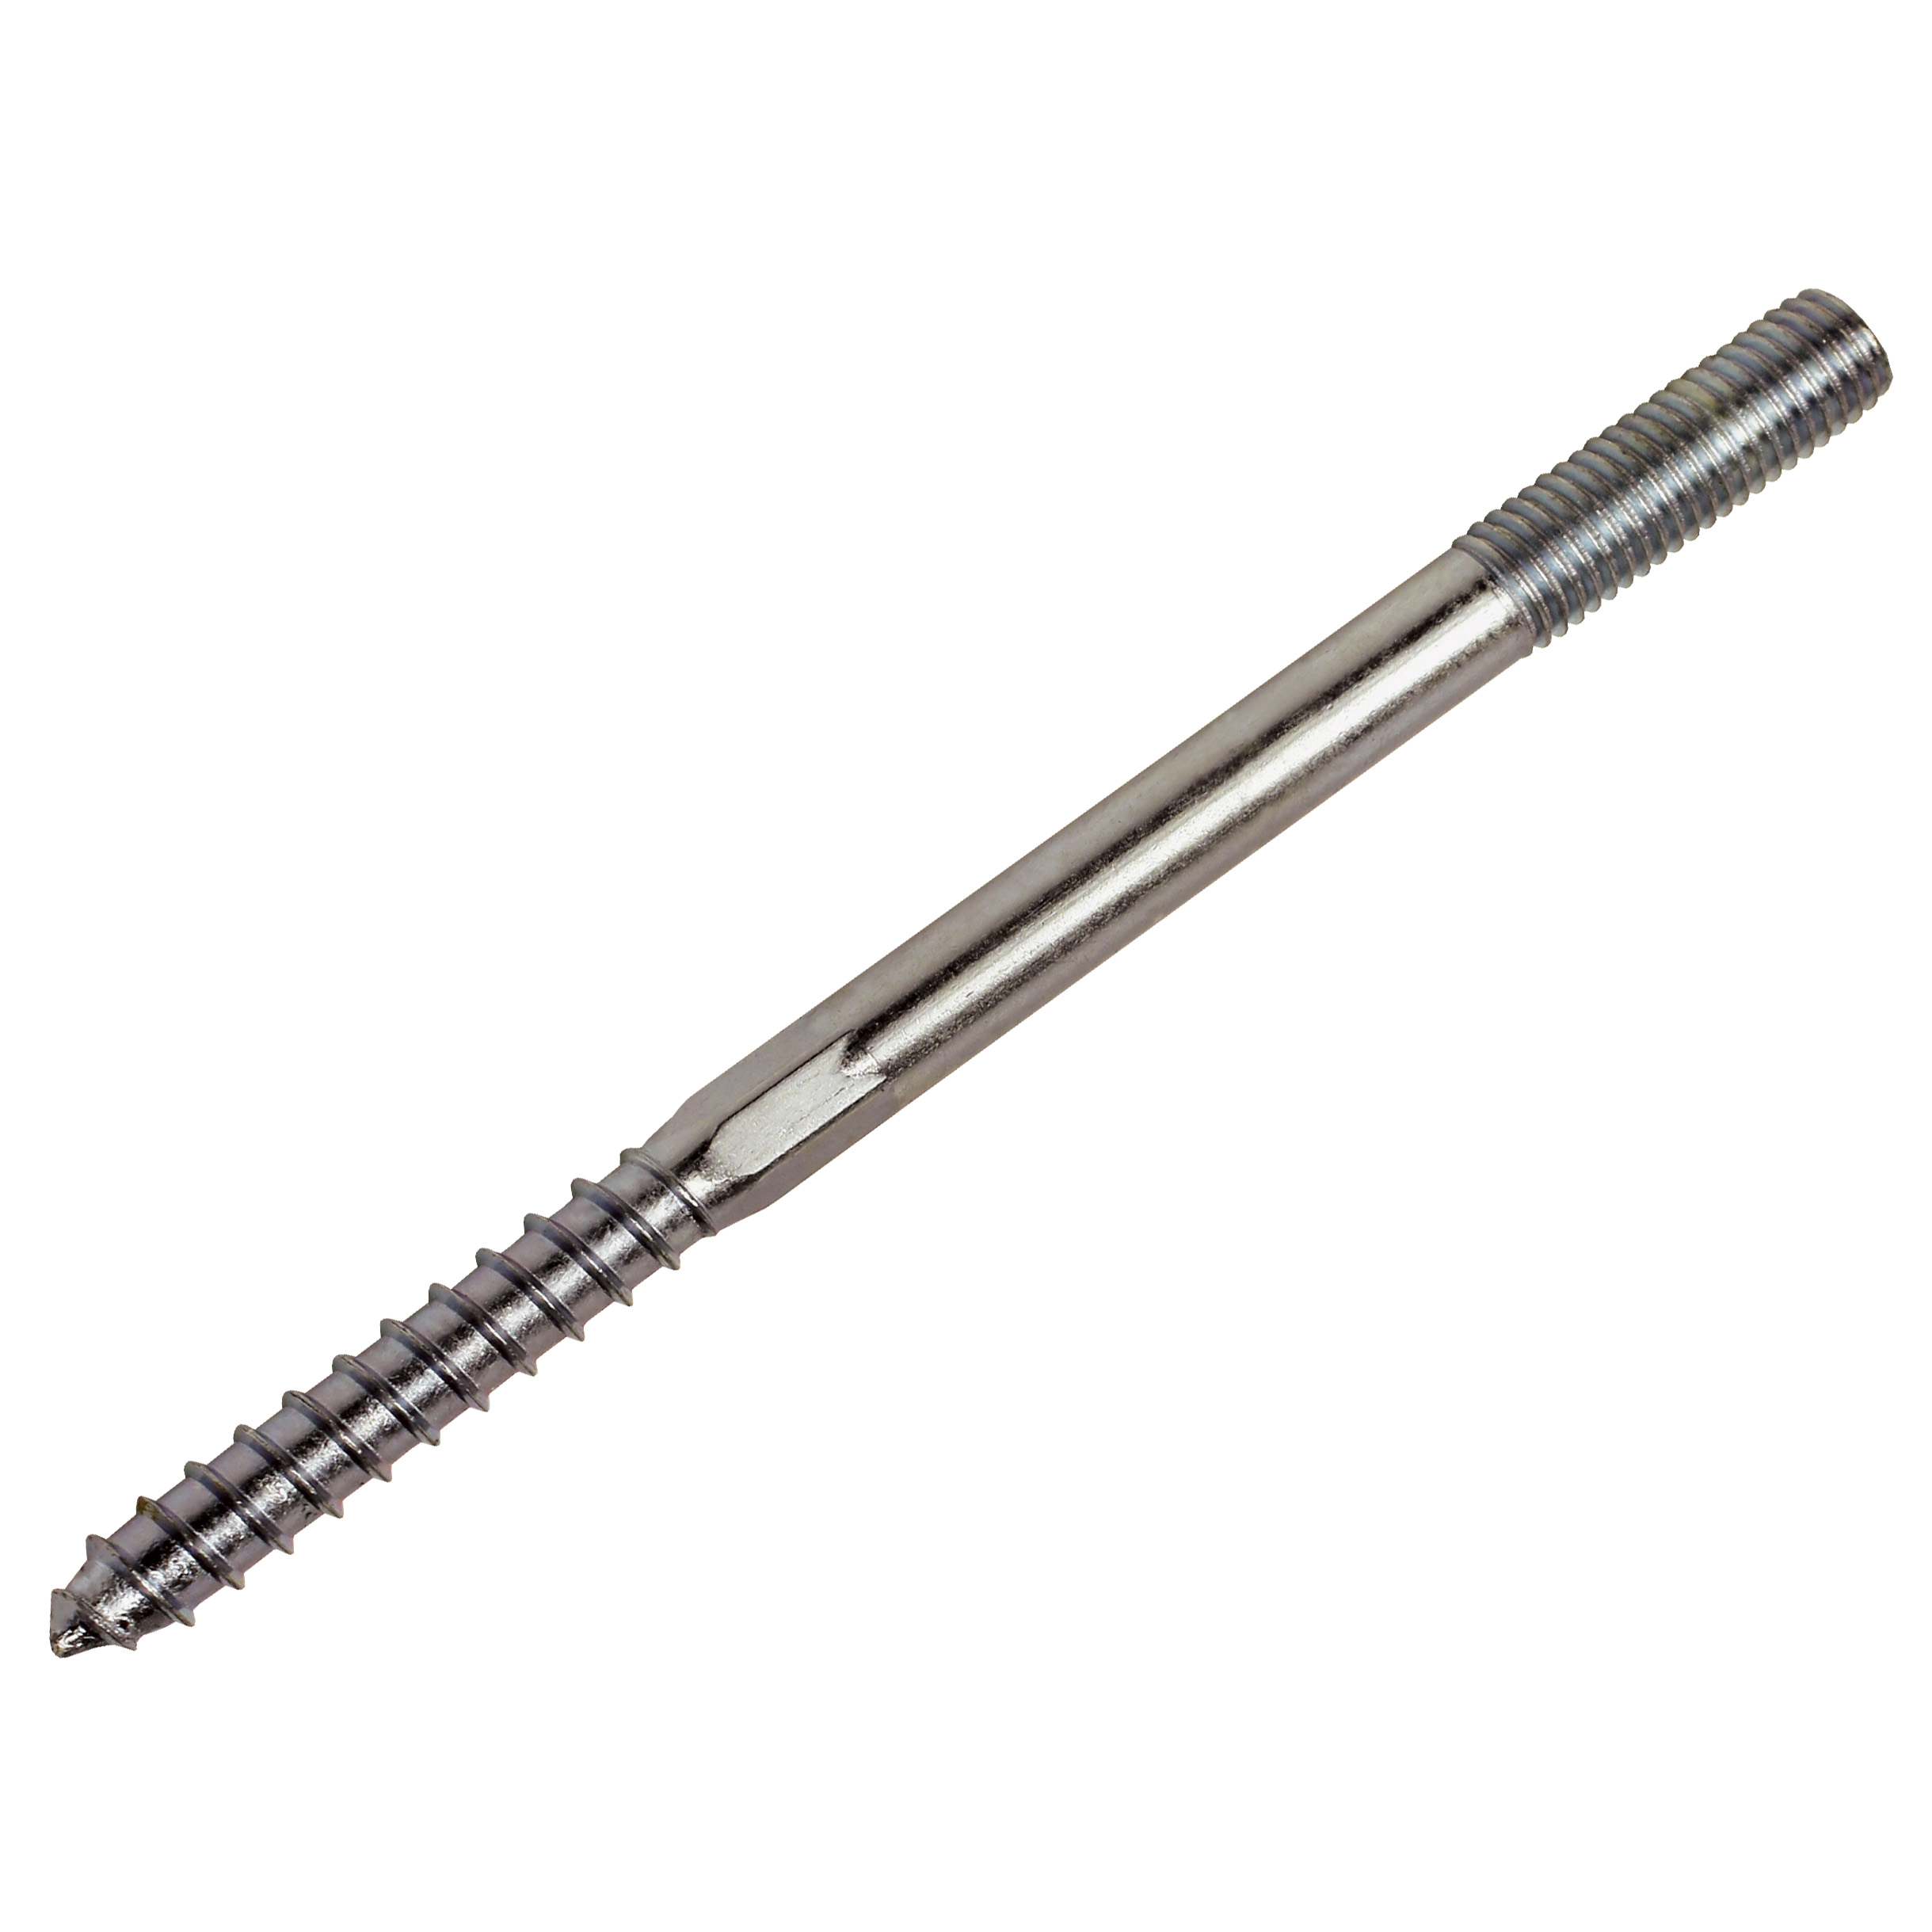 Dual-thread screw wood/metal - Steel -  - 